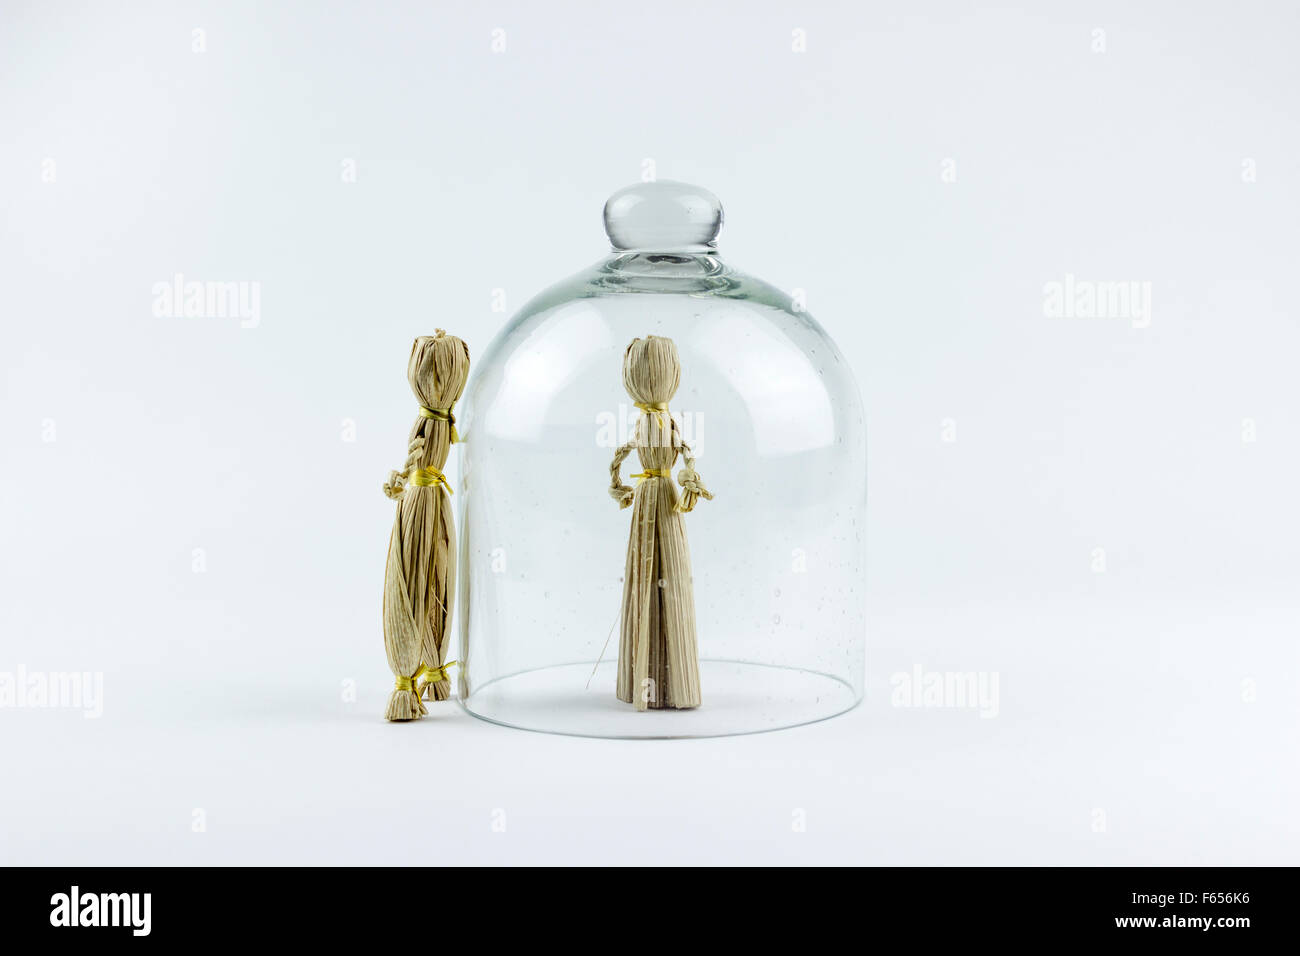 L'homme et la femme poupées de paille, divisé par une cloche de verre, sur un fond blanc Banque D'Images